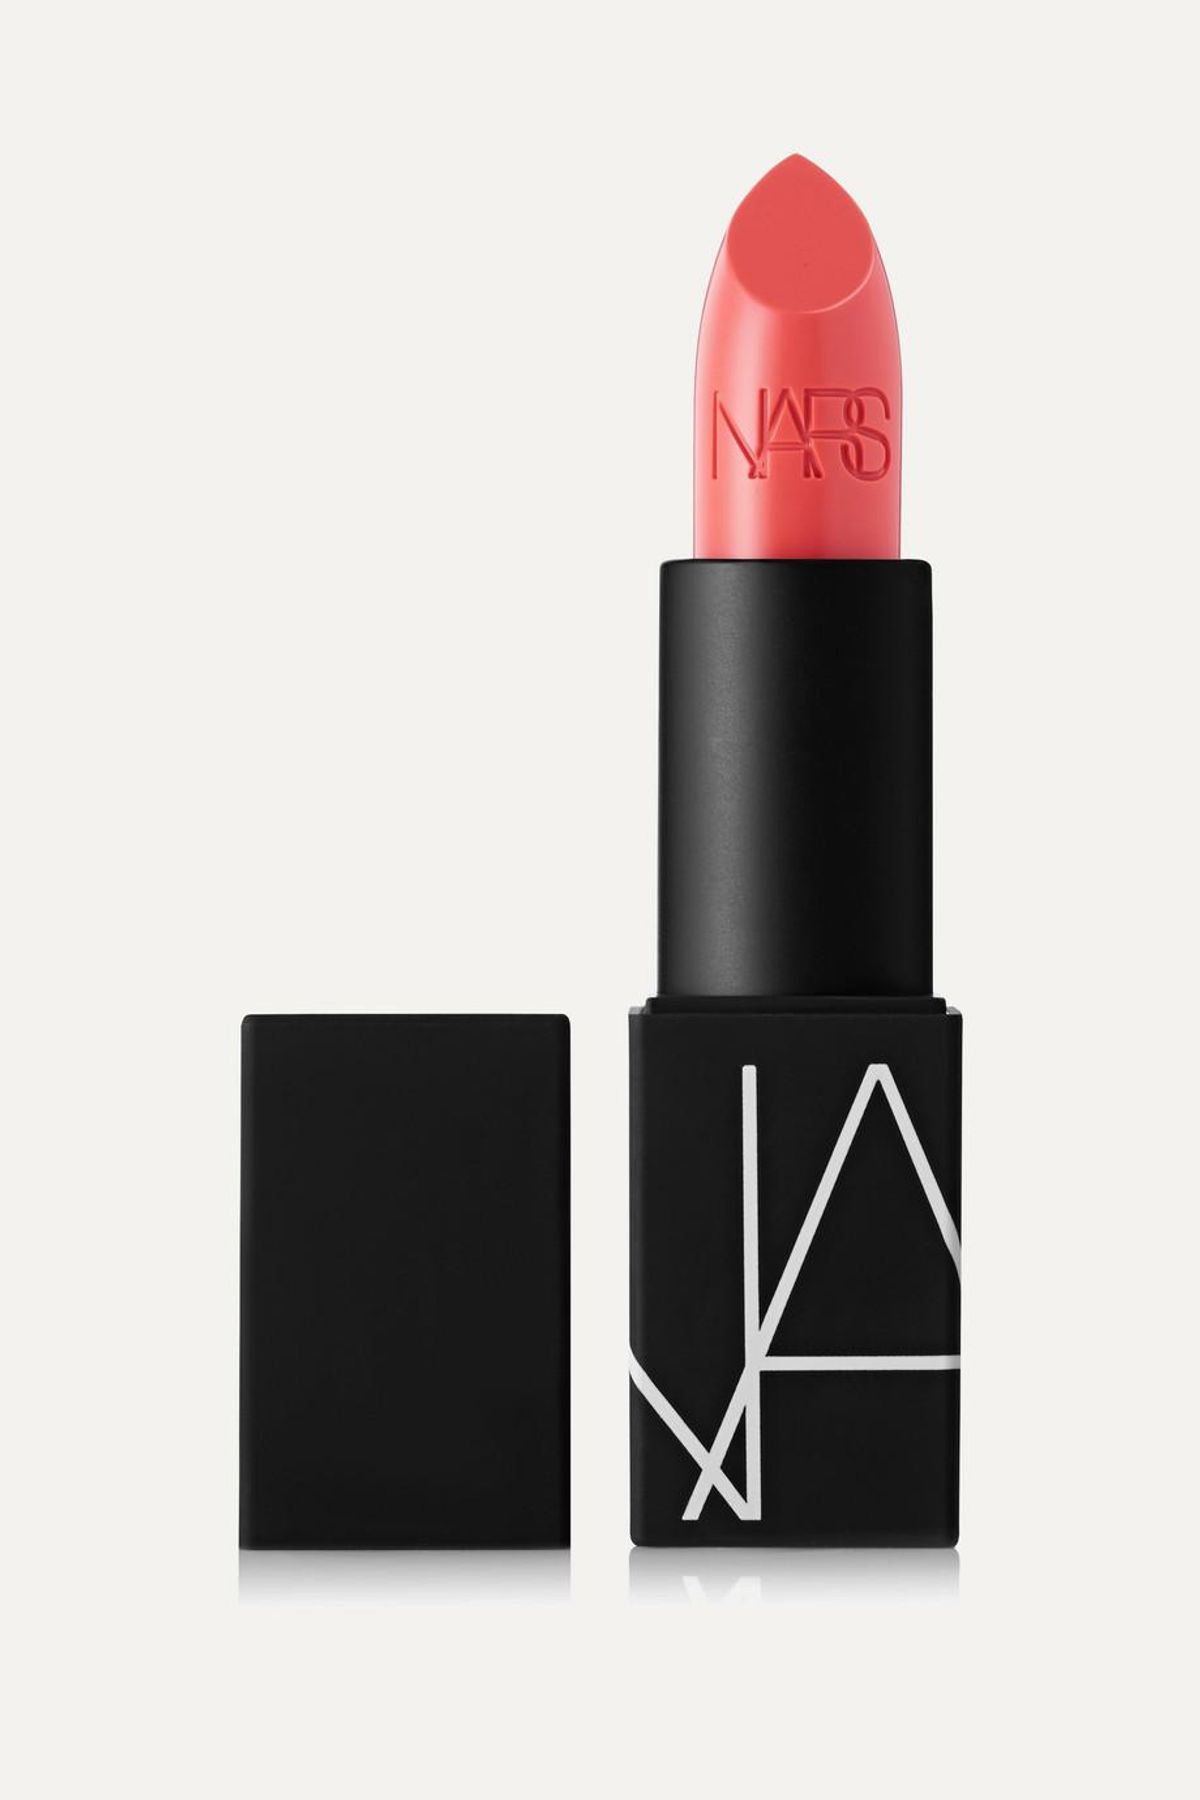 nars lipstick in license to love